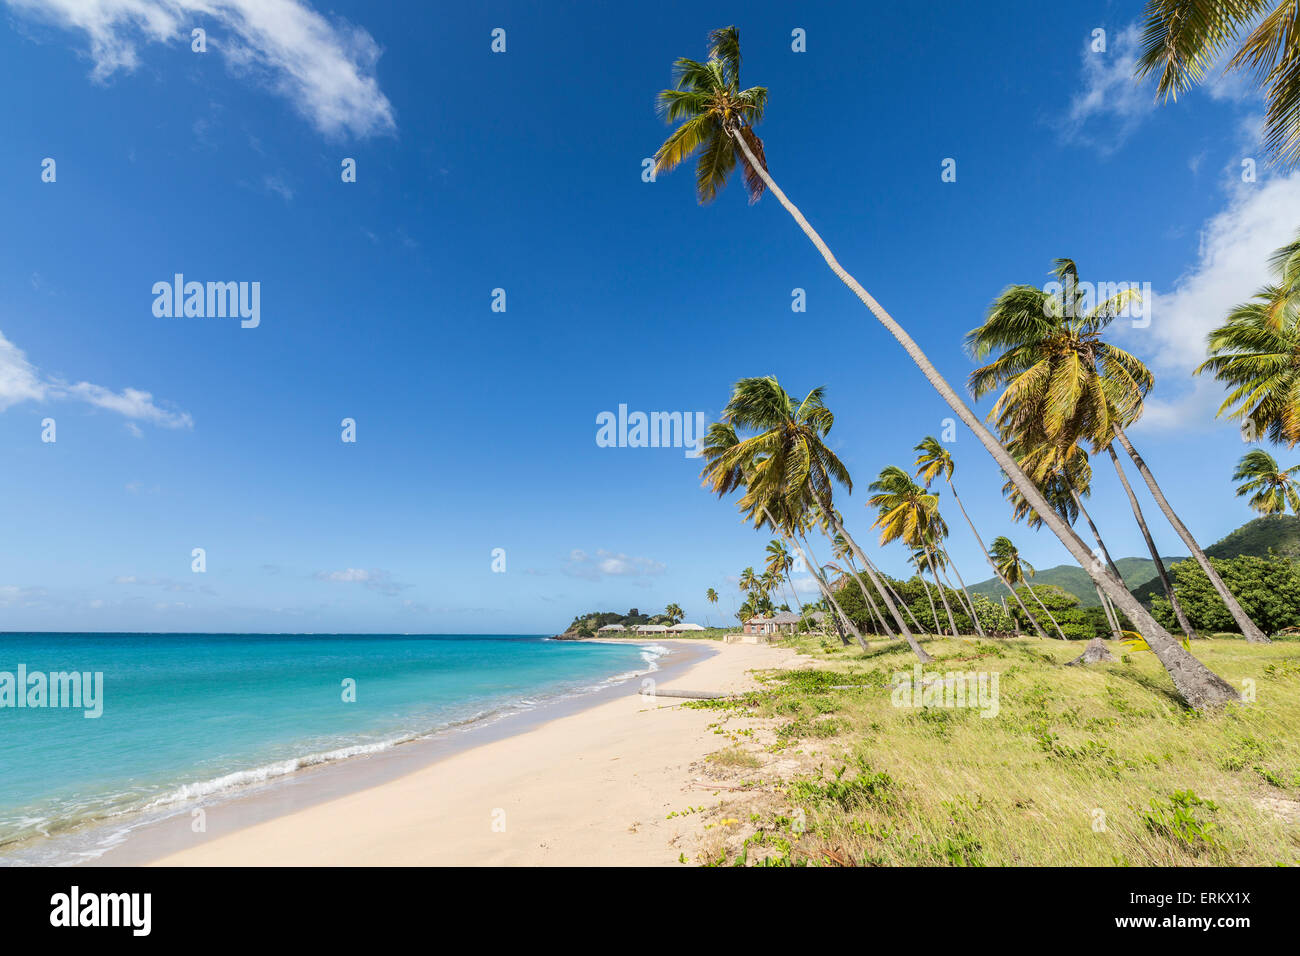 Les cocotiers qui s'étend vers la mer des Caraïbes près de Carlisle Bay. Antigua, les îles sous le vent, Antilles, Caraïbes Banque D'Images